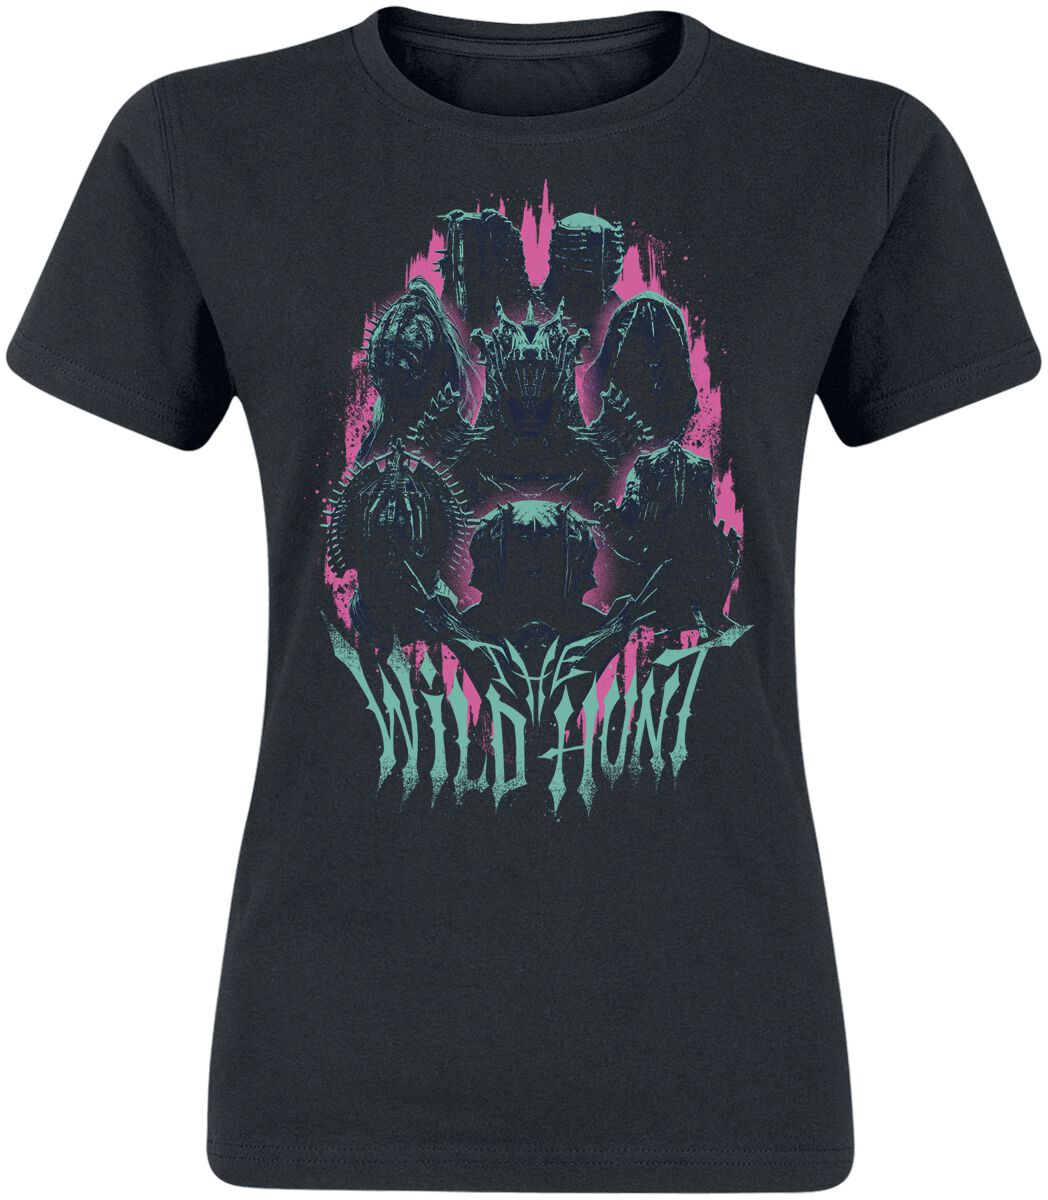 The Witcher T-Shirt - Season 3 - Wildhunt - S bis XXL - für Damen - Größe L - schwarz  - EMP exklusives Merchandise!